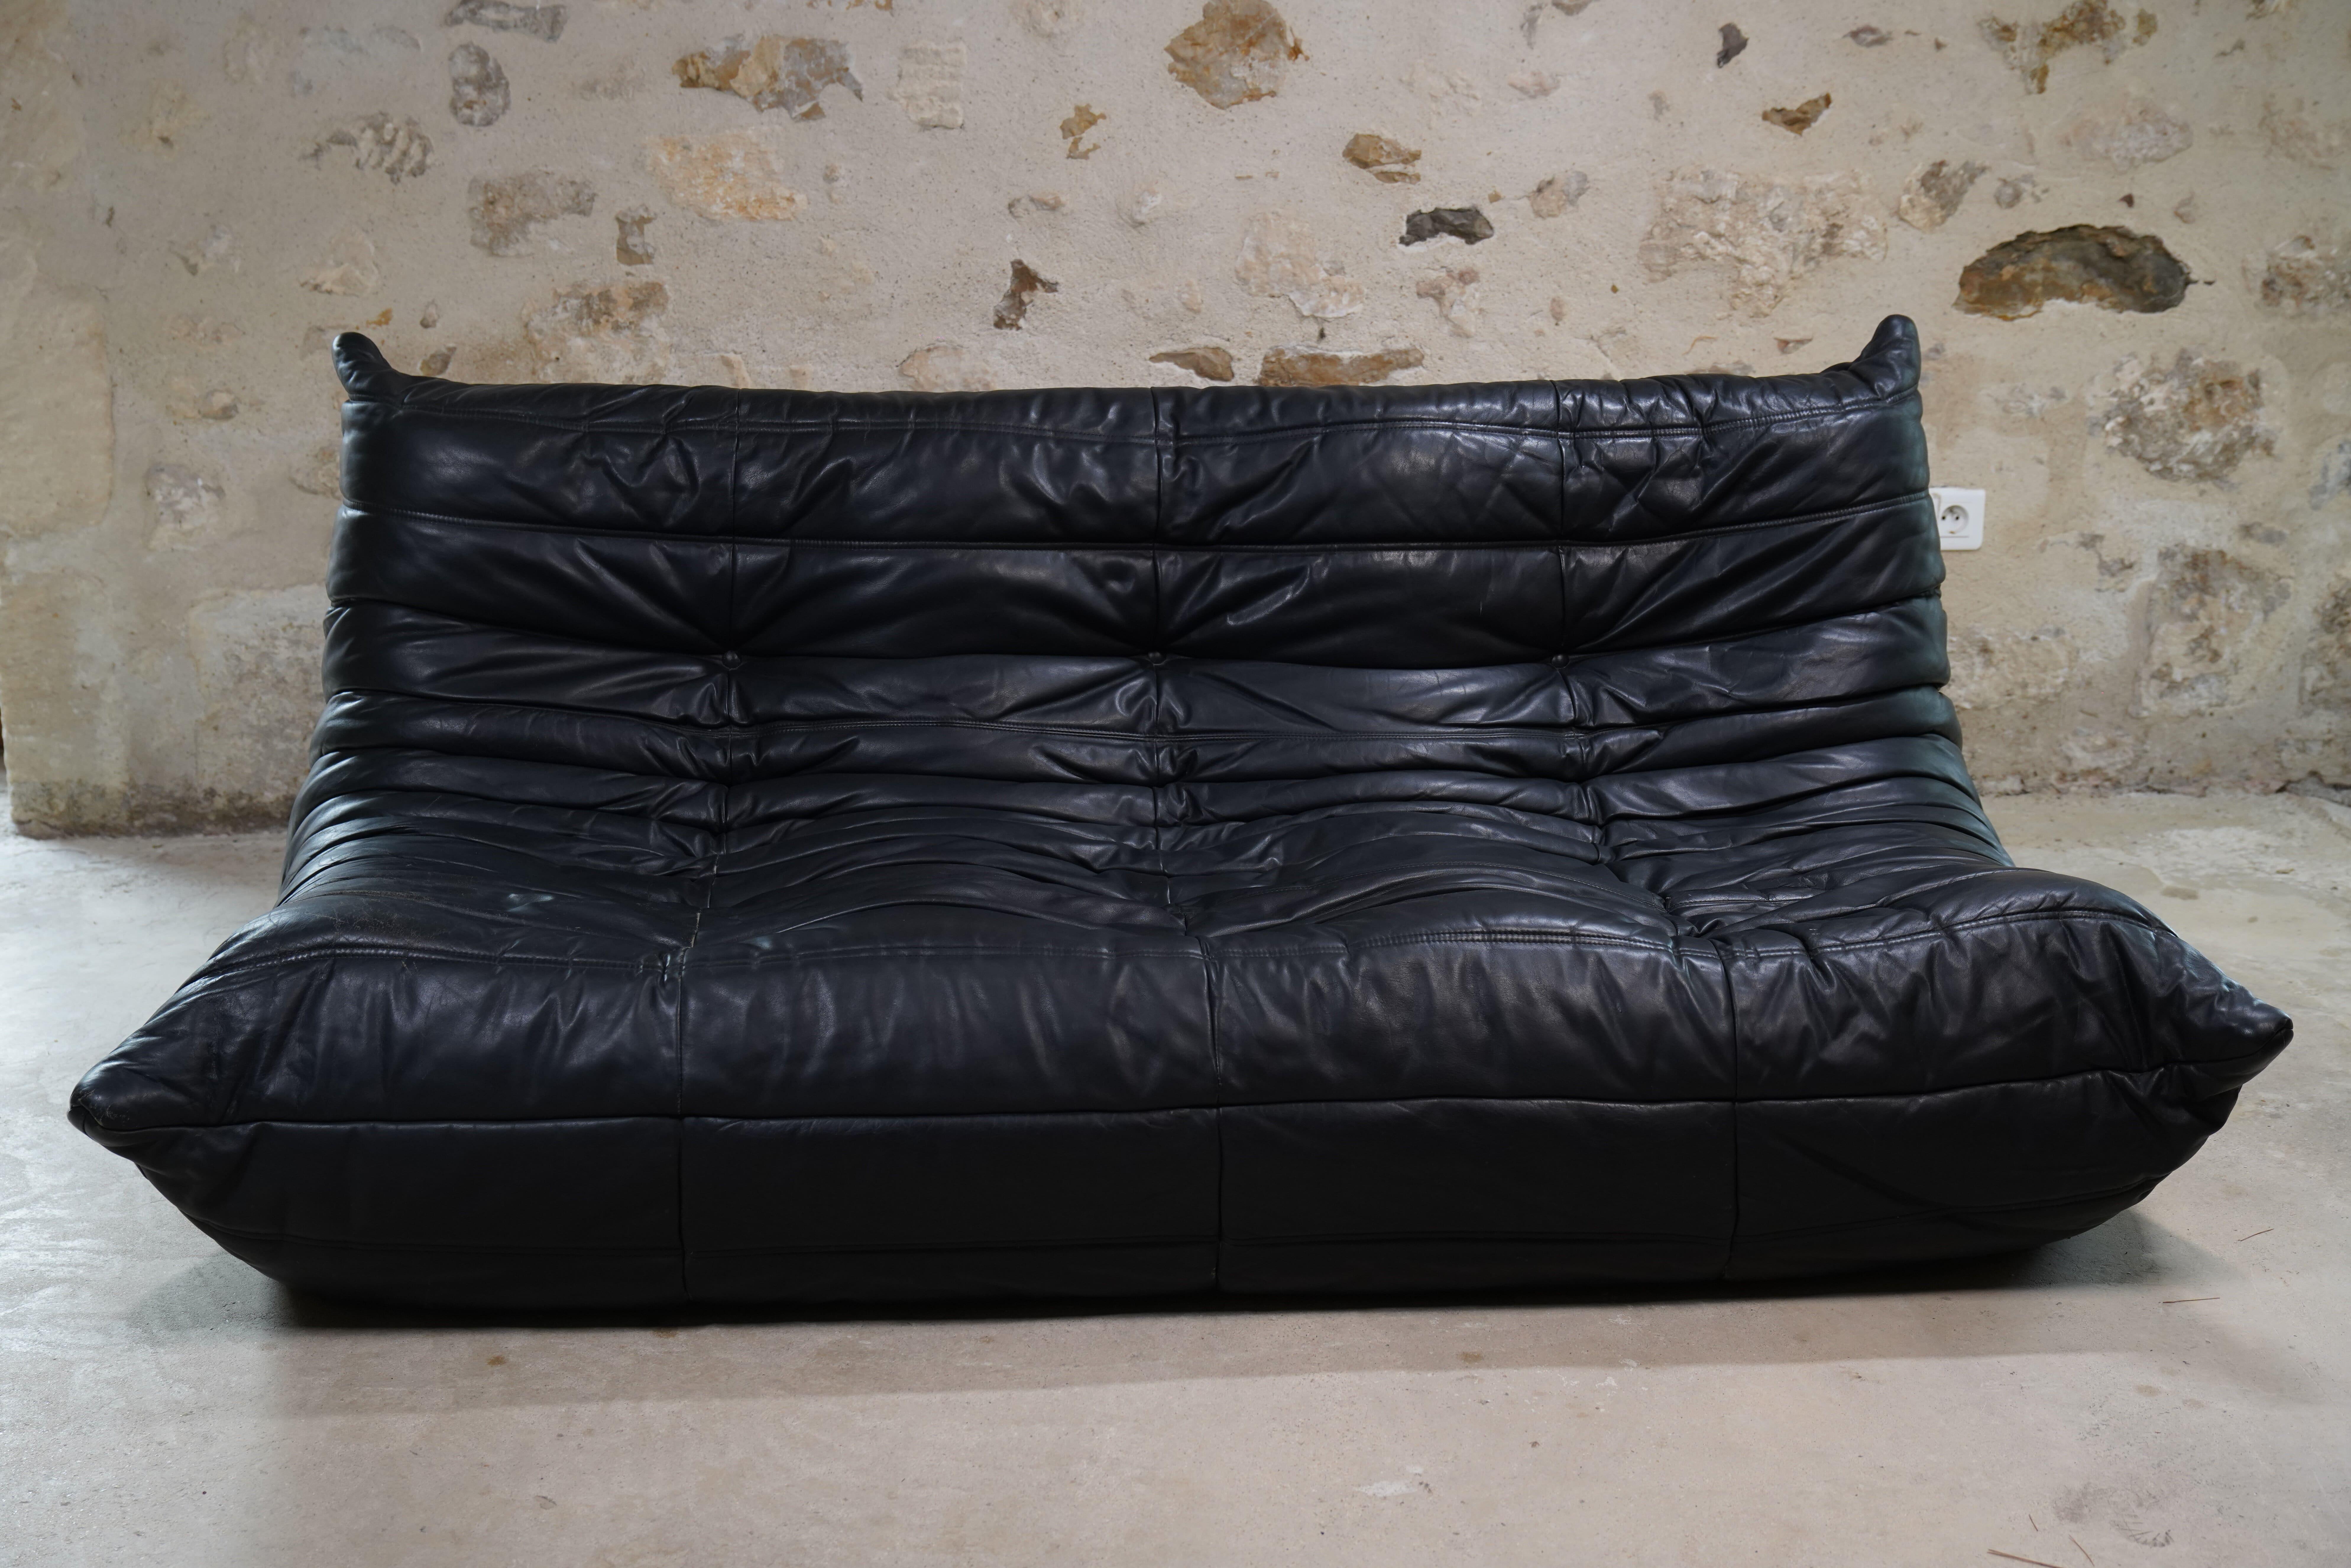 Magnifique canapé Togo 3 places en cuir noir conçu par Michel Ducaroy pour Ligne Roset en 1998.

Le designer Michel Ducaroy s'est inspiré d'un tube de dentifrice en aluminium pour concevoir le Togo, remarquant qu'il 